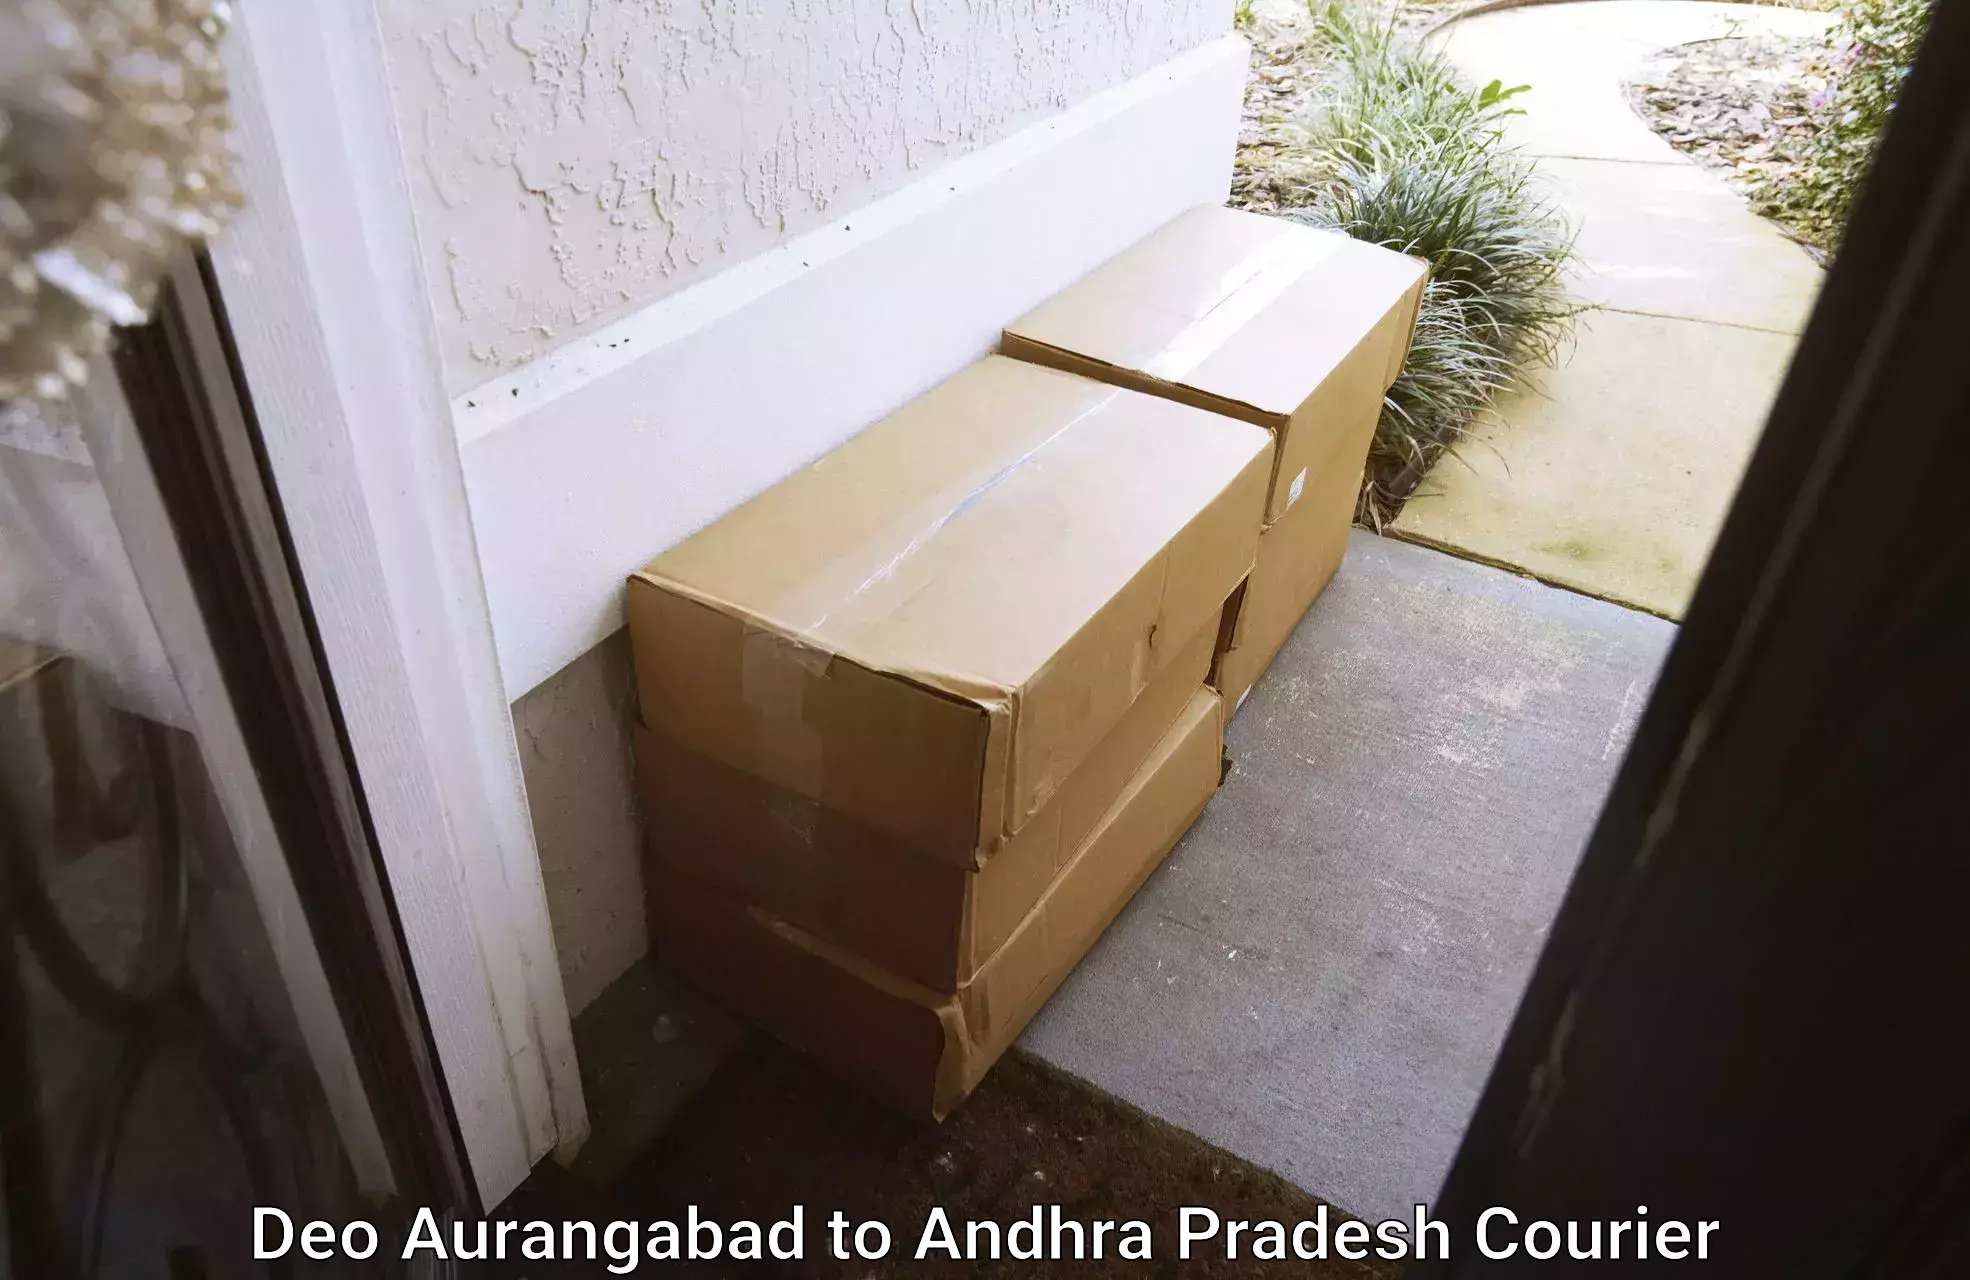 Reliable movers Deo Aurangabad to Gorantla